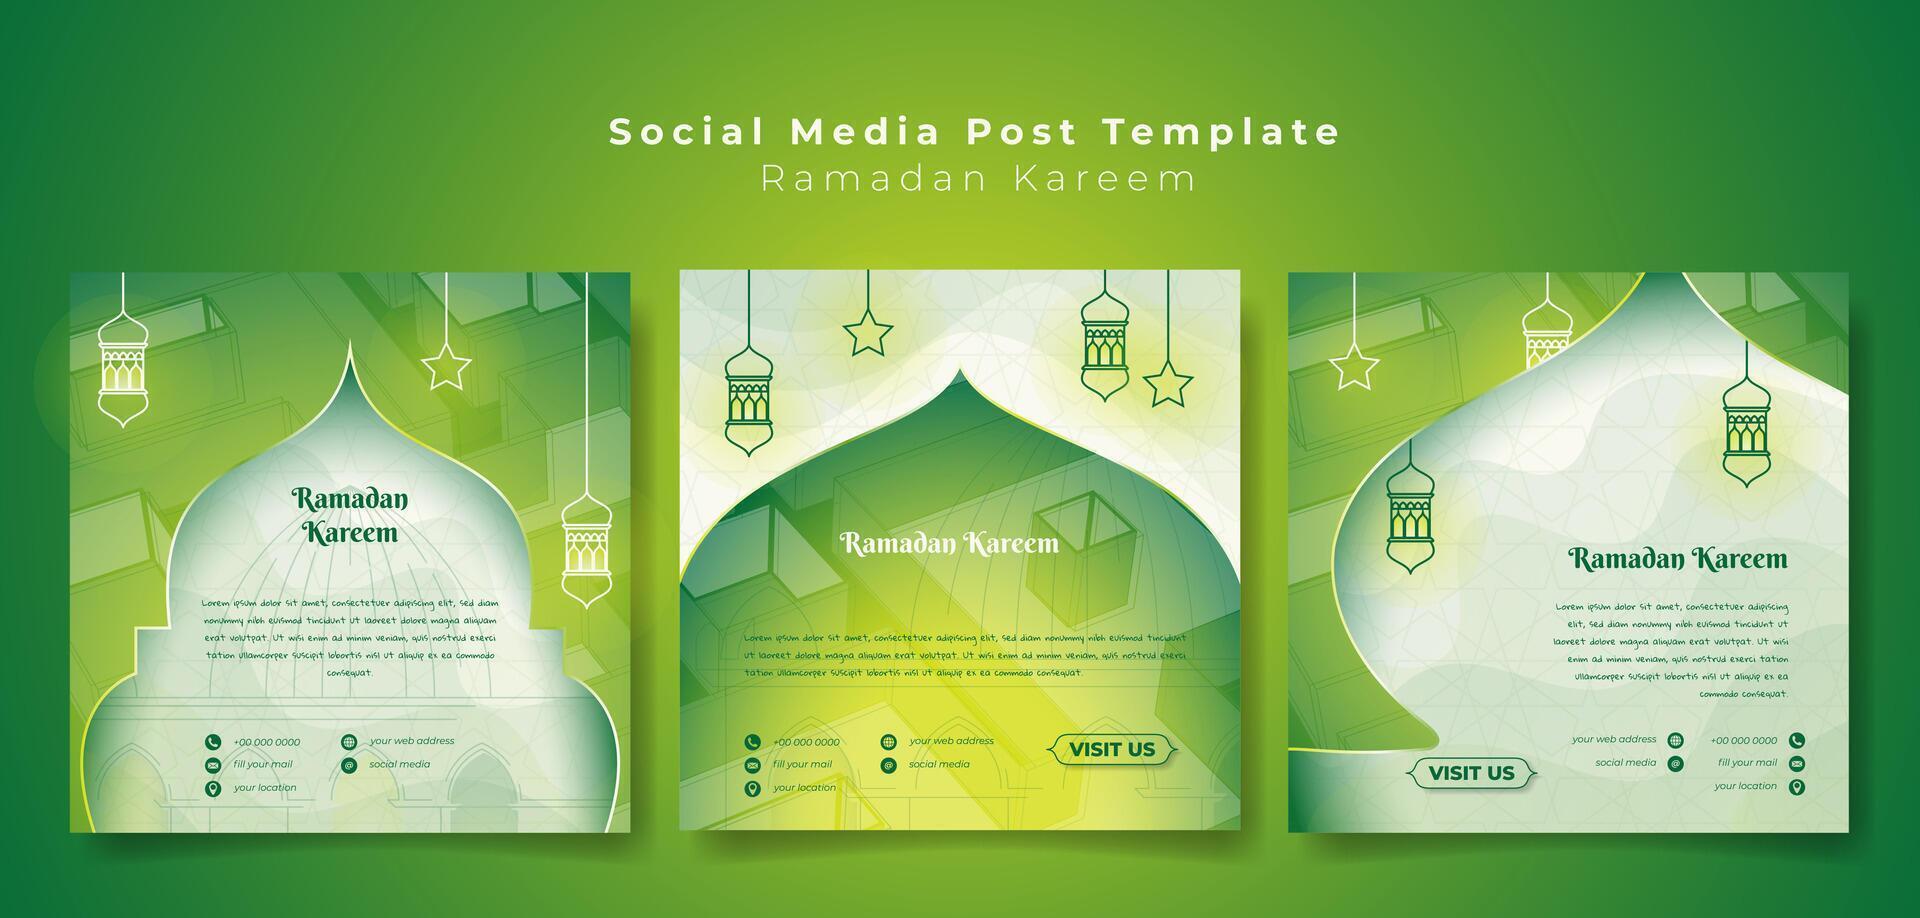 uppsättning av social media posta mall med lykta och stjärna design i grön bakgrund för ramadan annons, islamic bakgrund med moské i grön. vektor